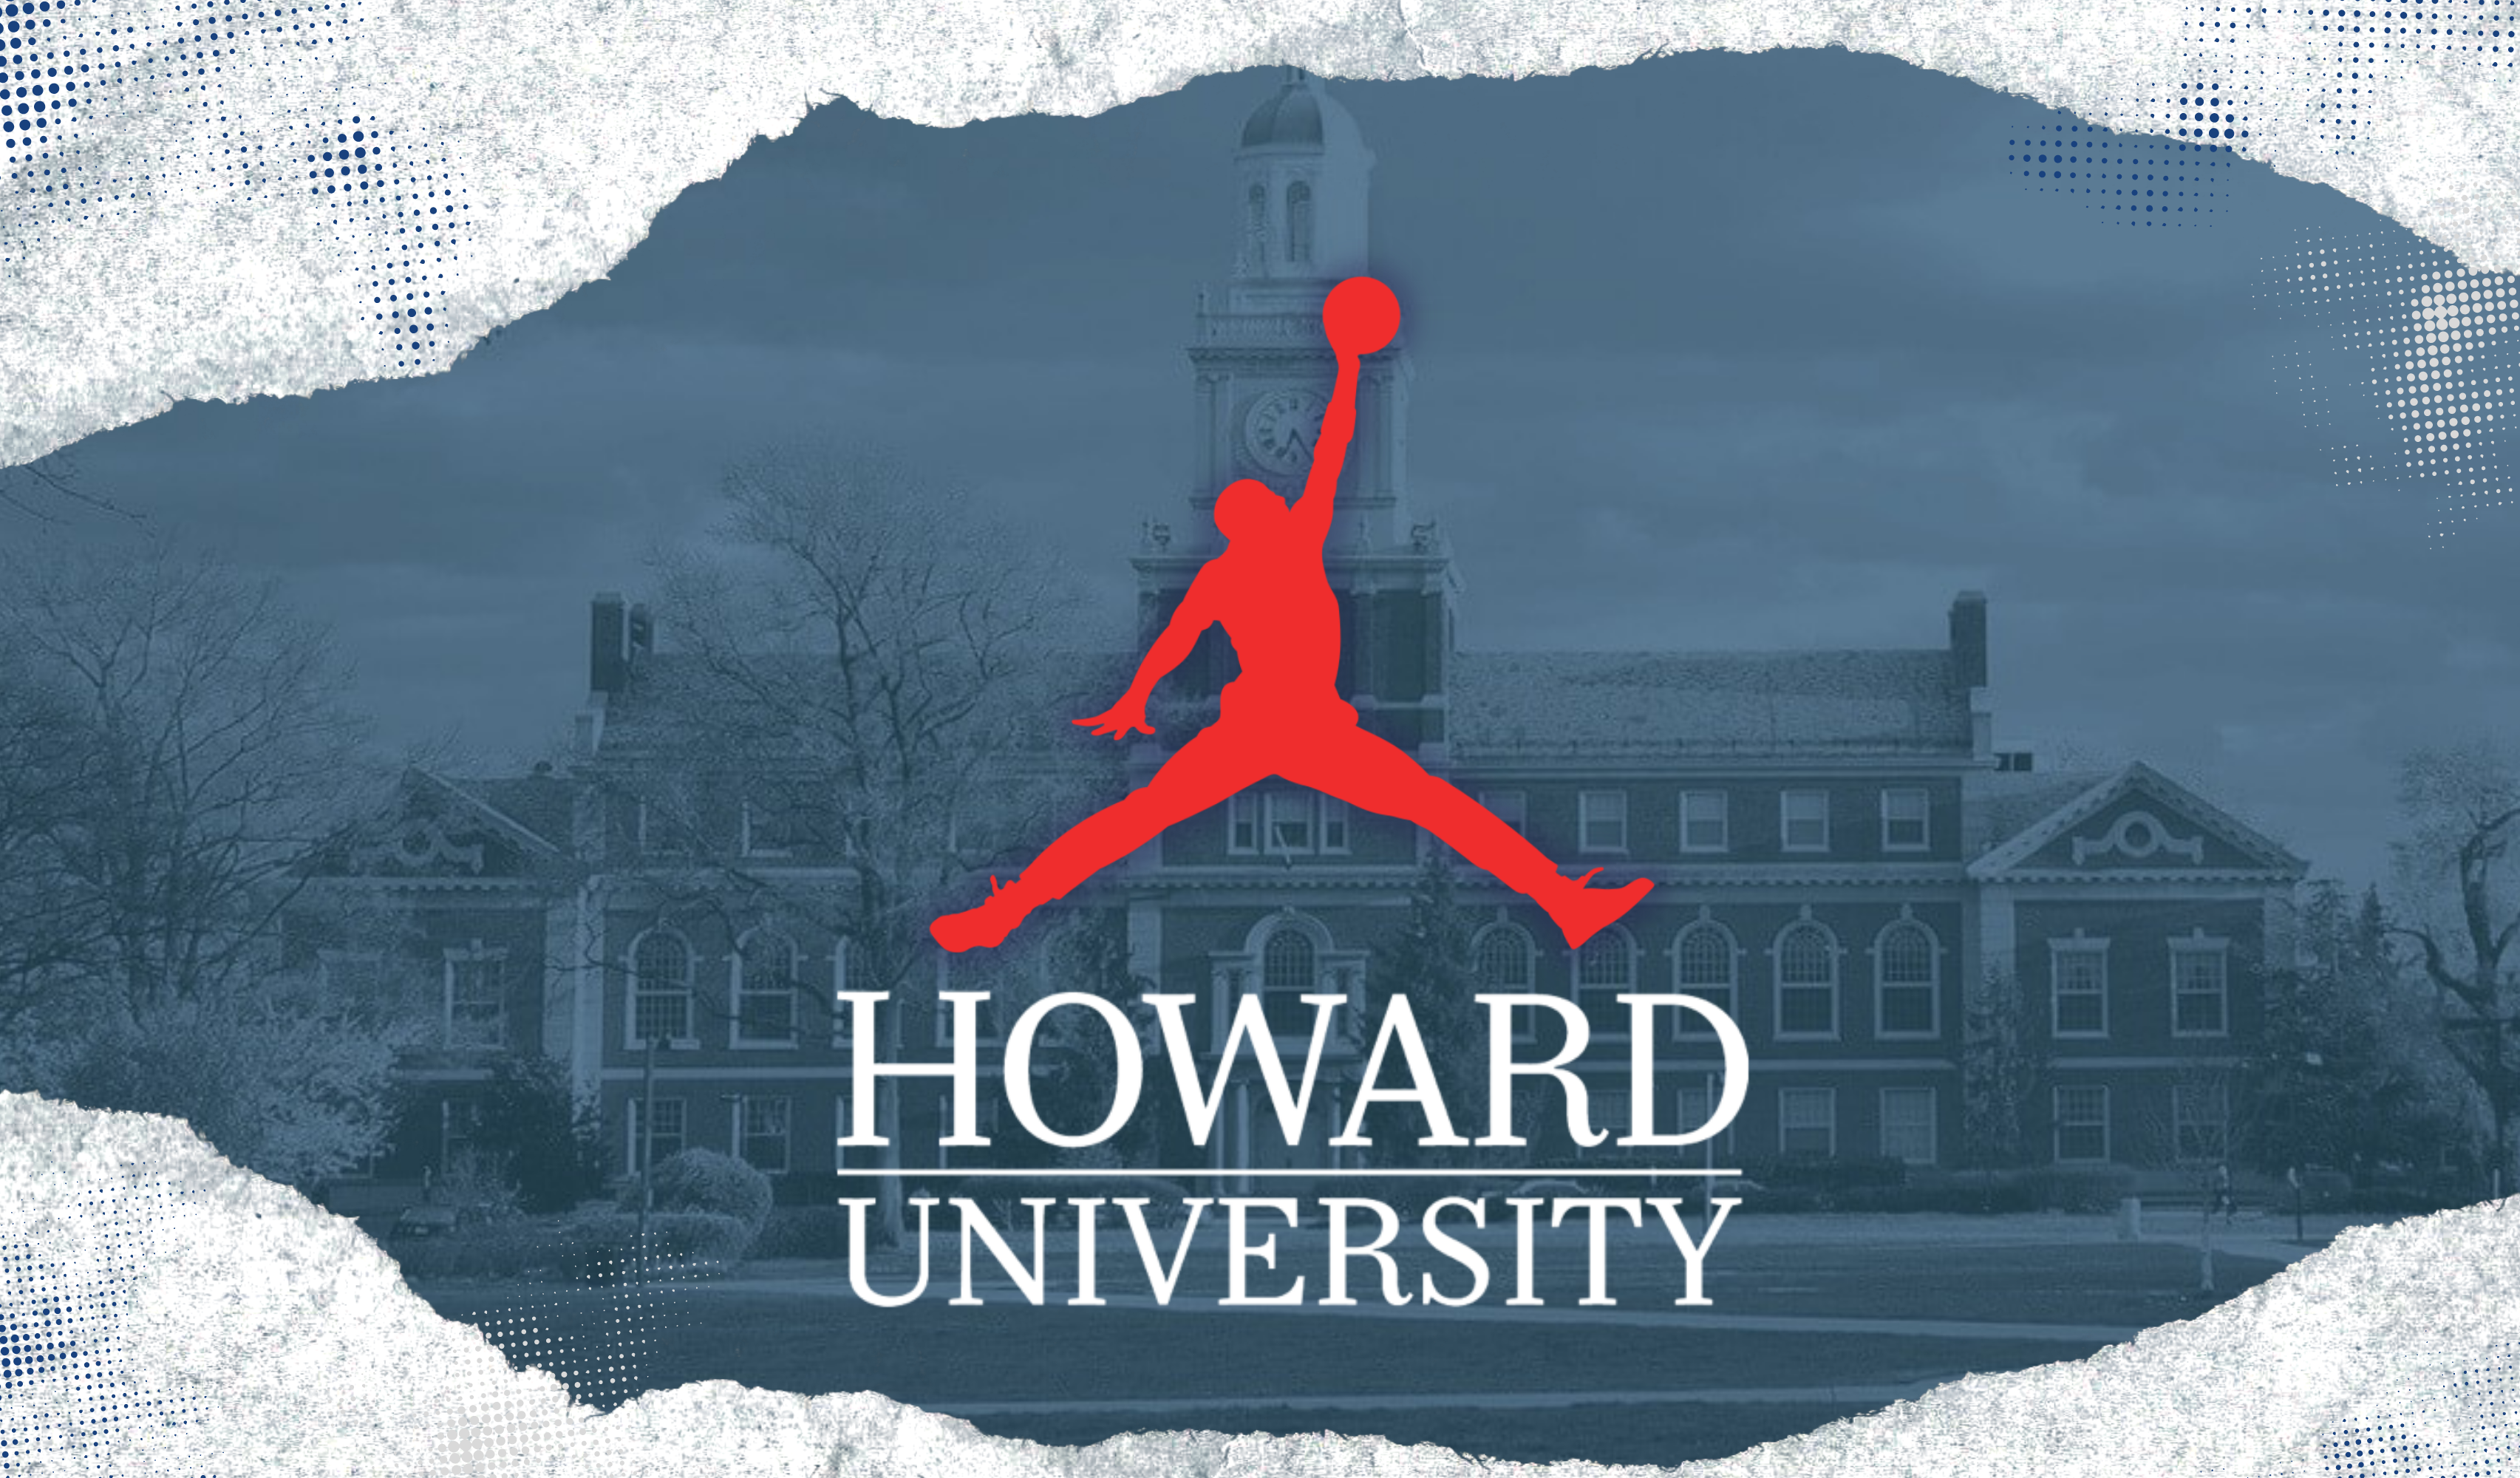 Jumpman, Jumpman: Howard University And The Jordan Brand Kick Off Multi-Year Partnership